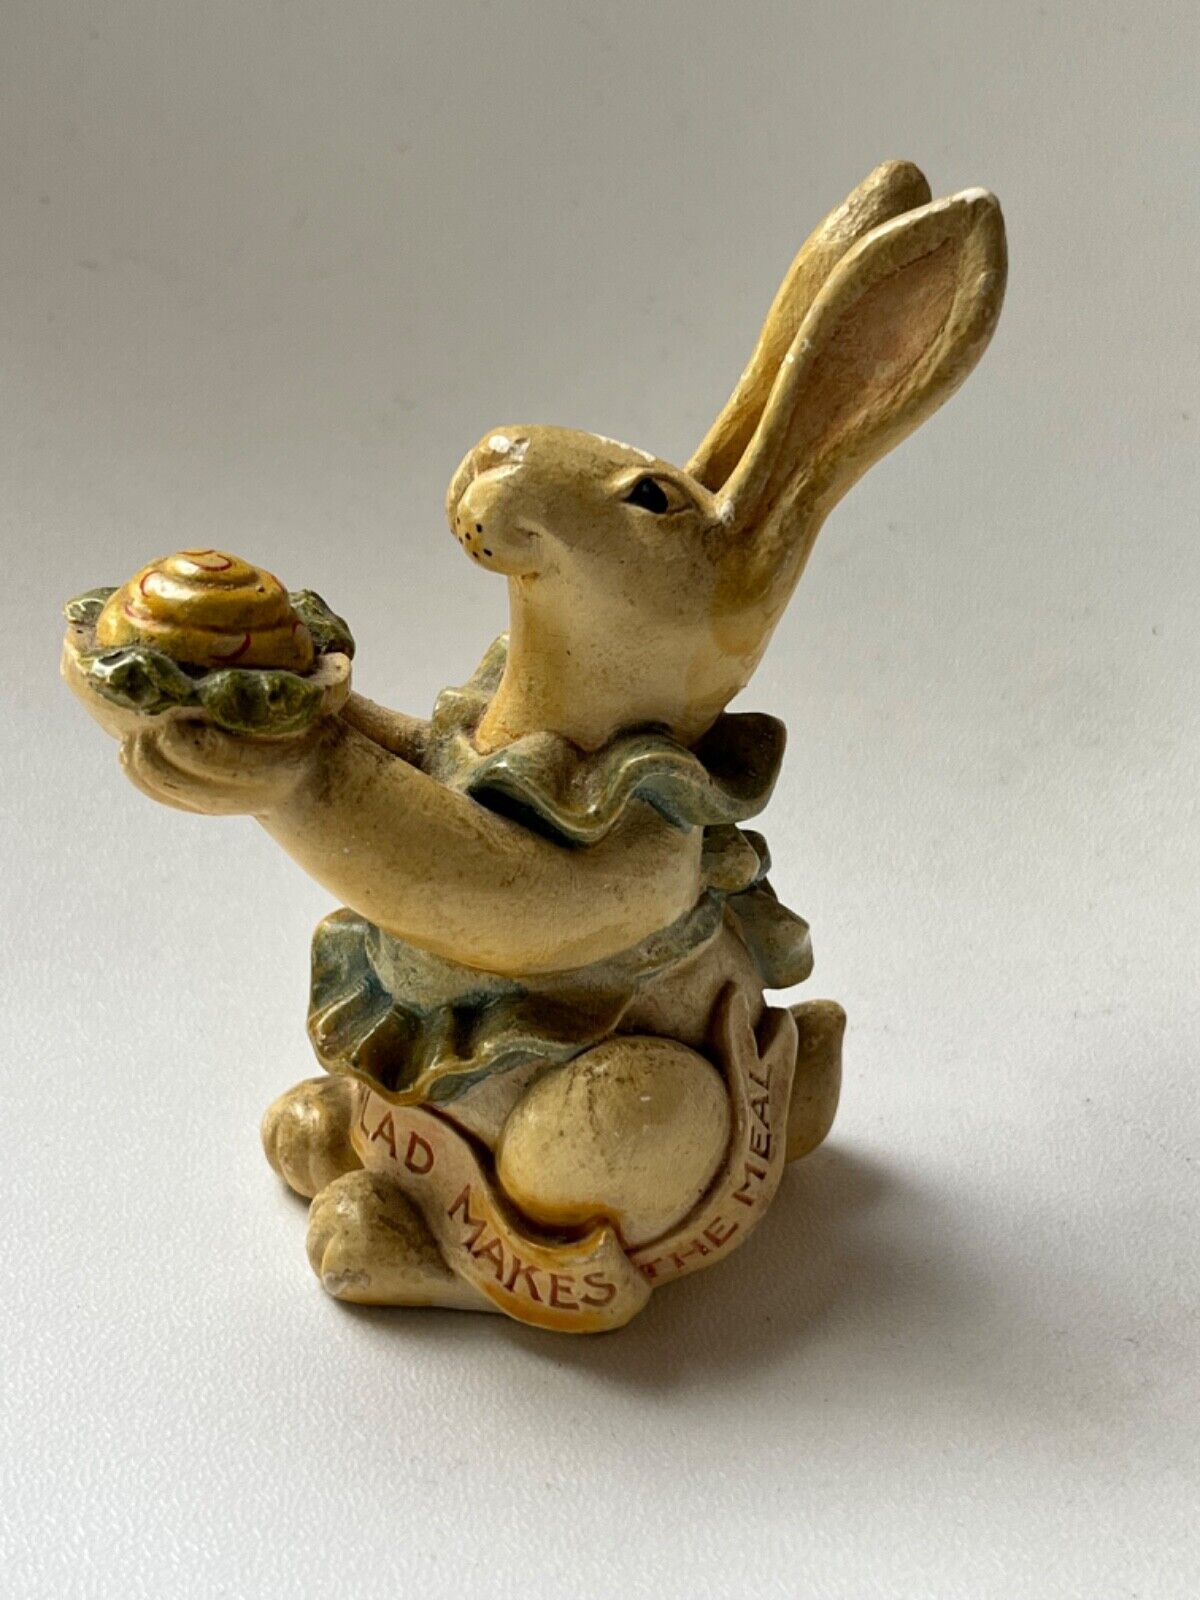 1954 Jell-o Salad Rabbit figurine